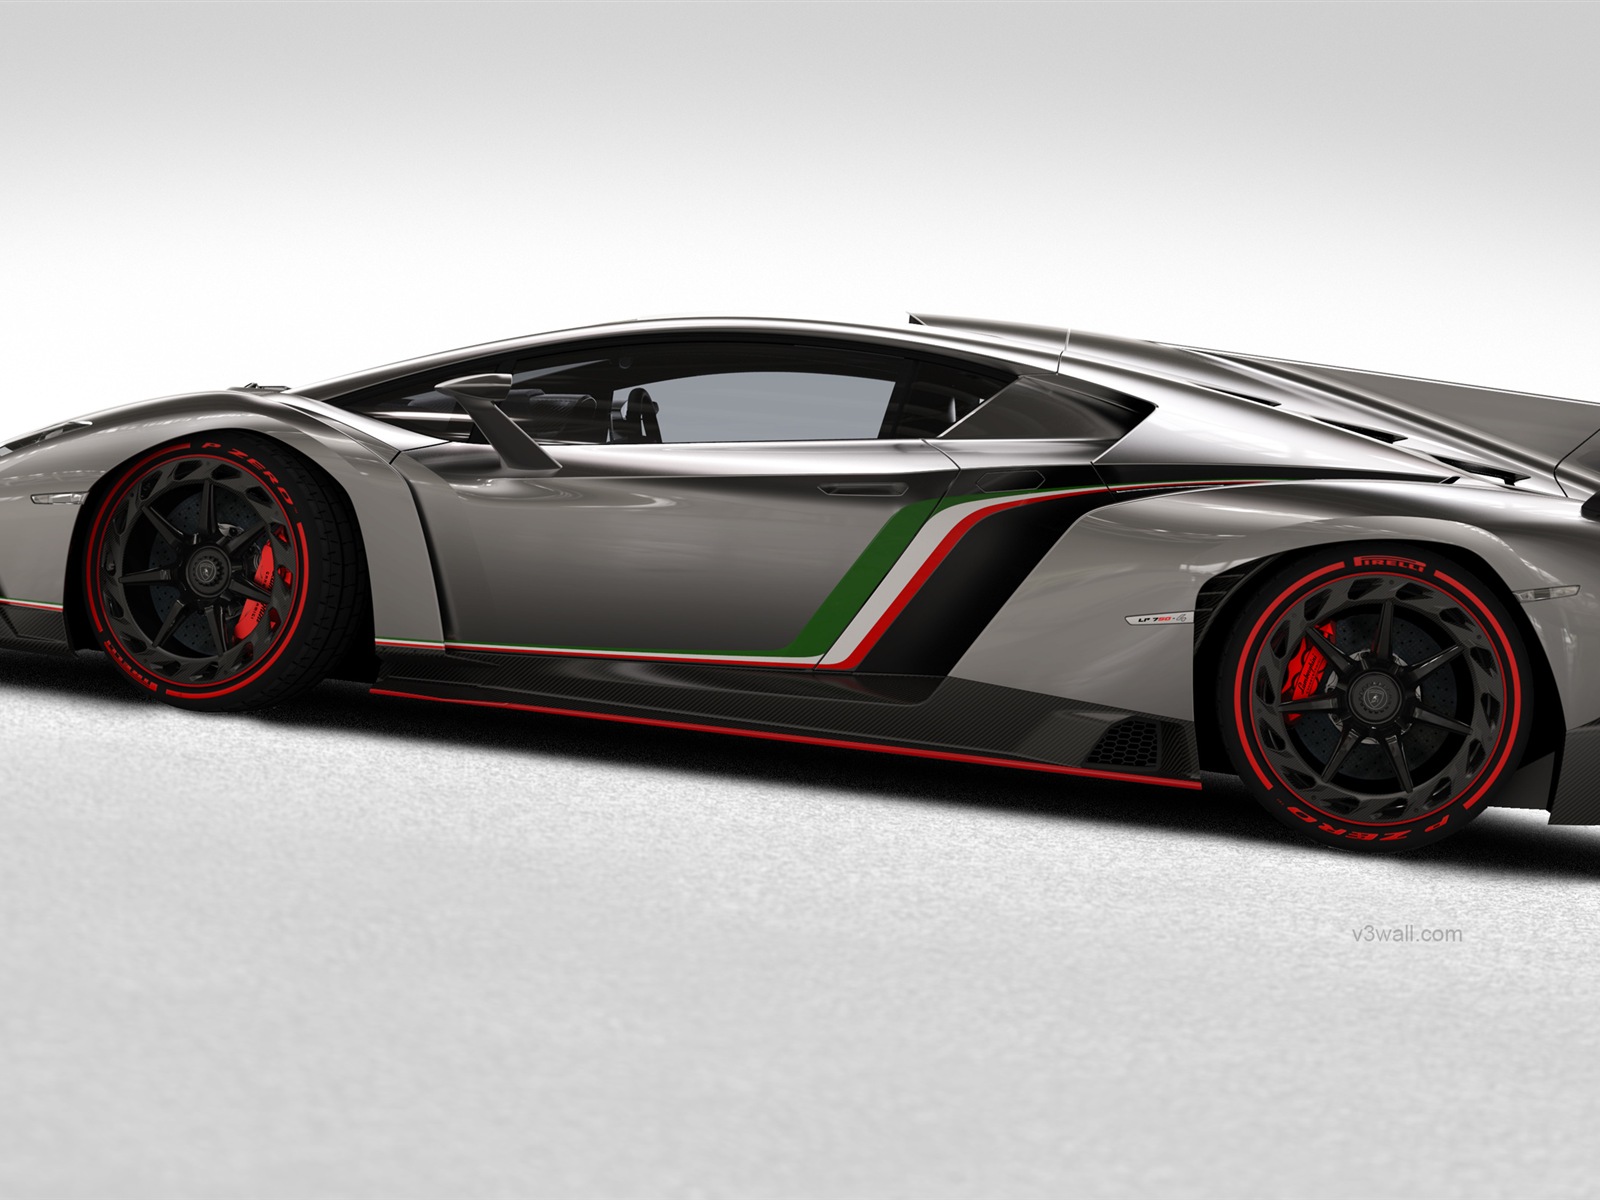 2013 Lamborghini Veneno 蘭博基尼Veneno豪華超級跑車高清壁紙 #3 - 1600x1200